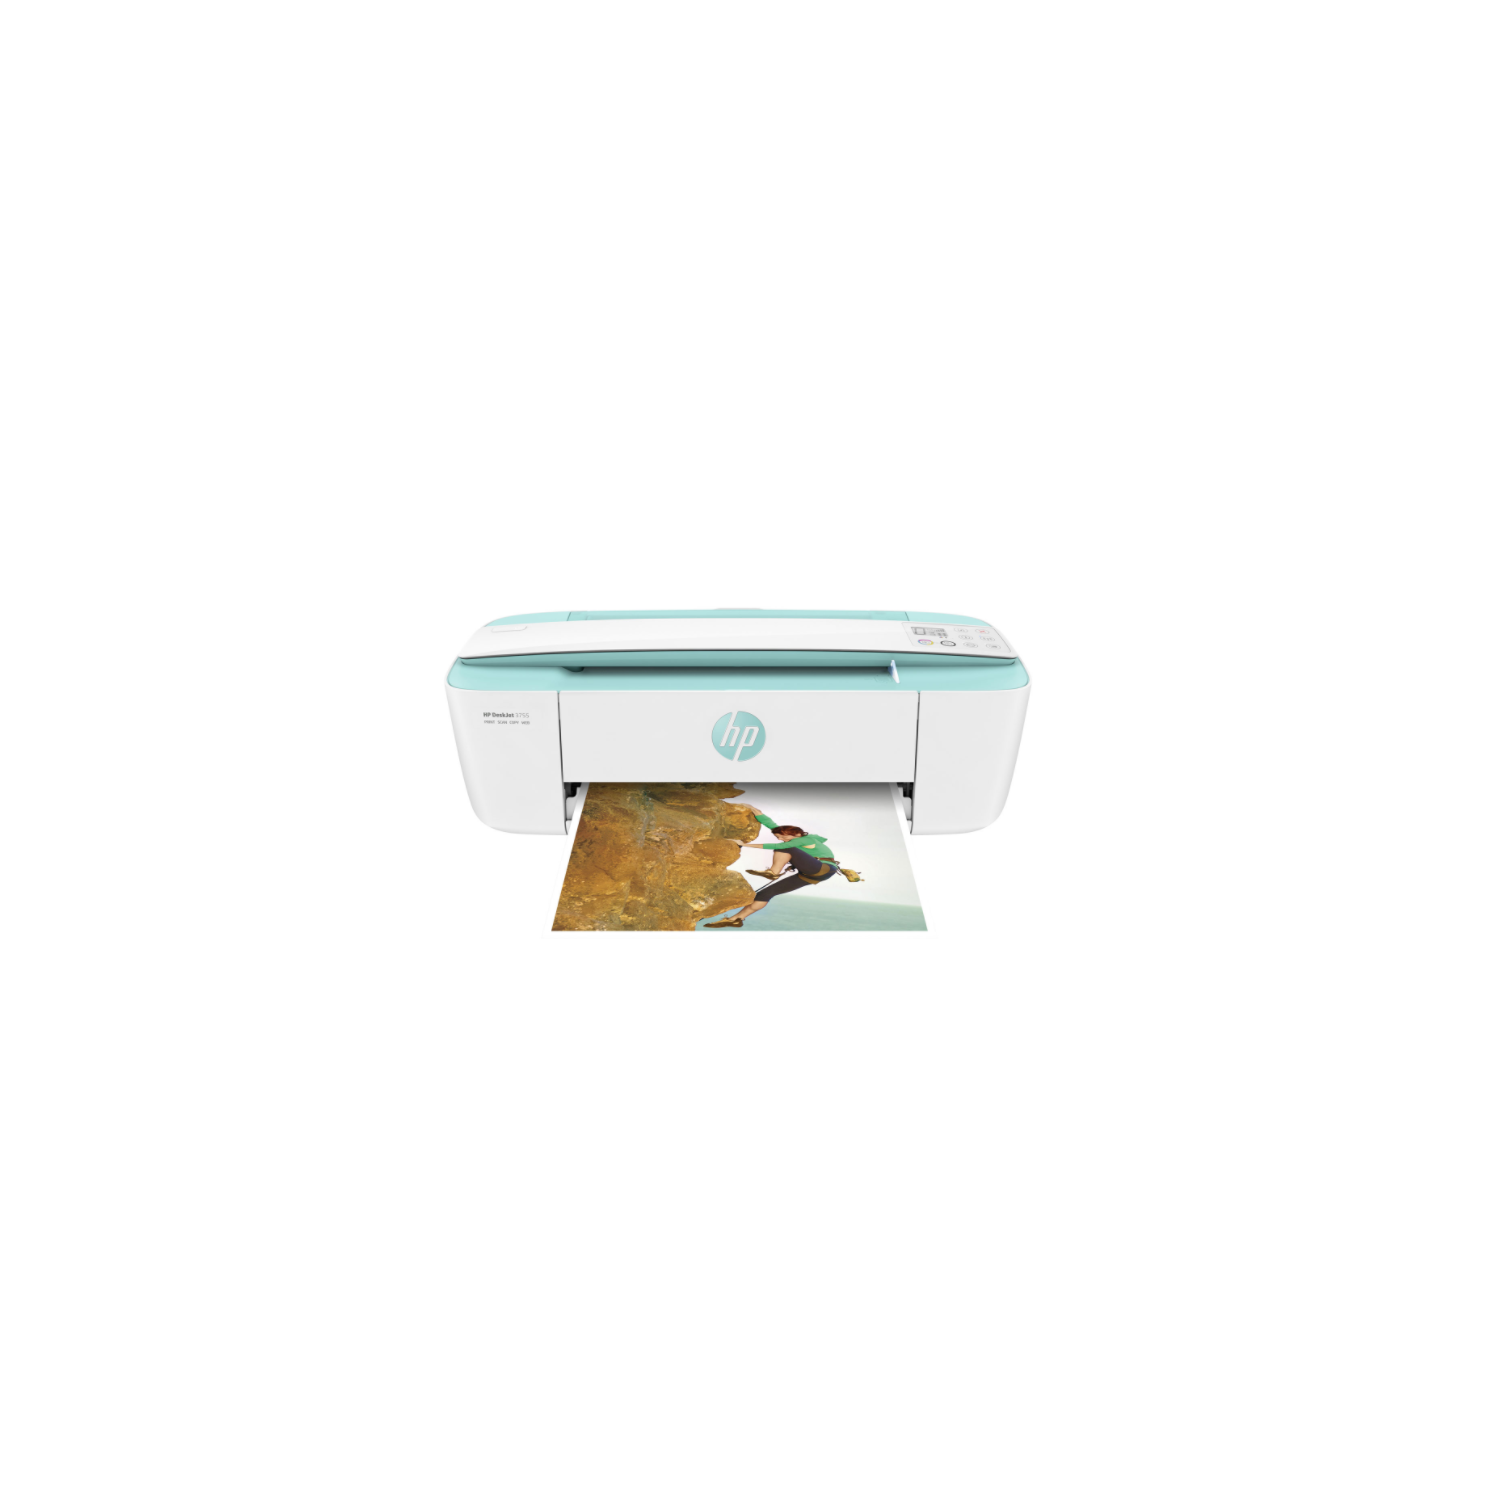 HP DeskJet 3755 All-In-One Inkjet Printer (Wireless) - Seagrass